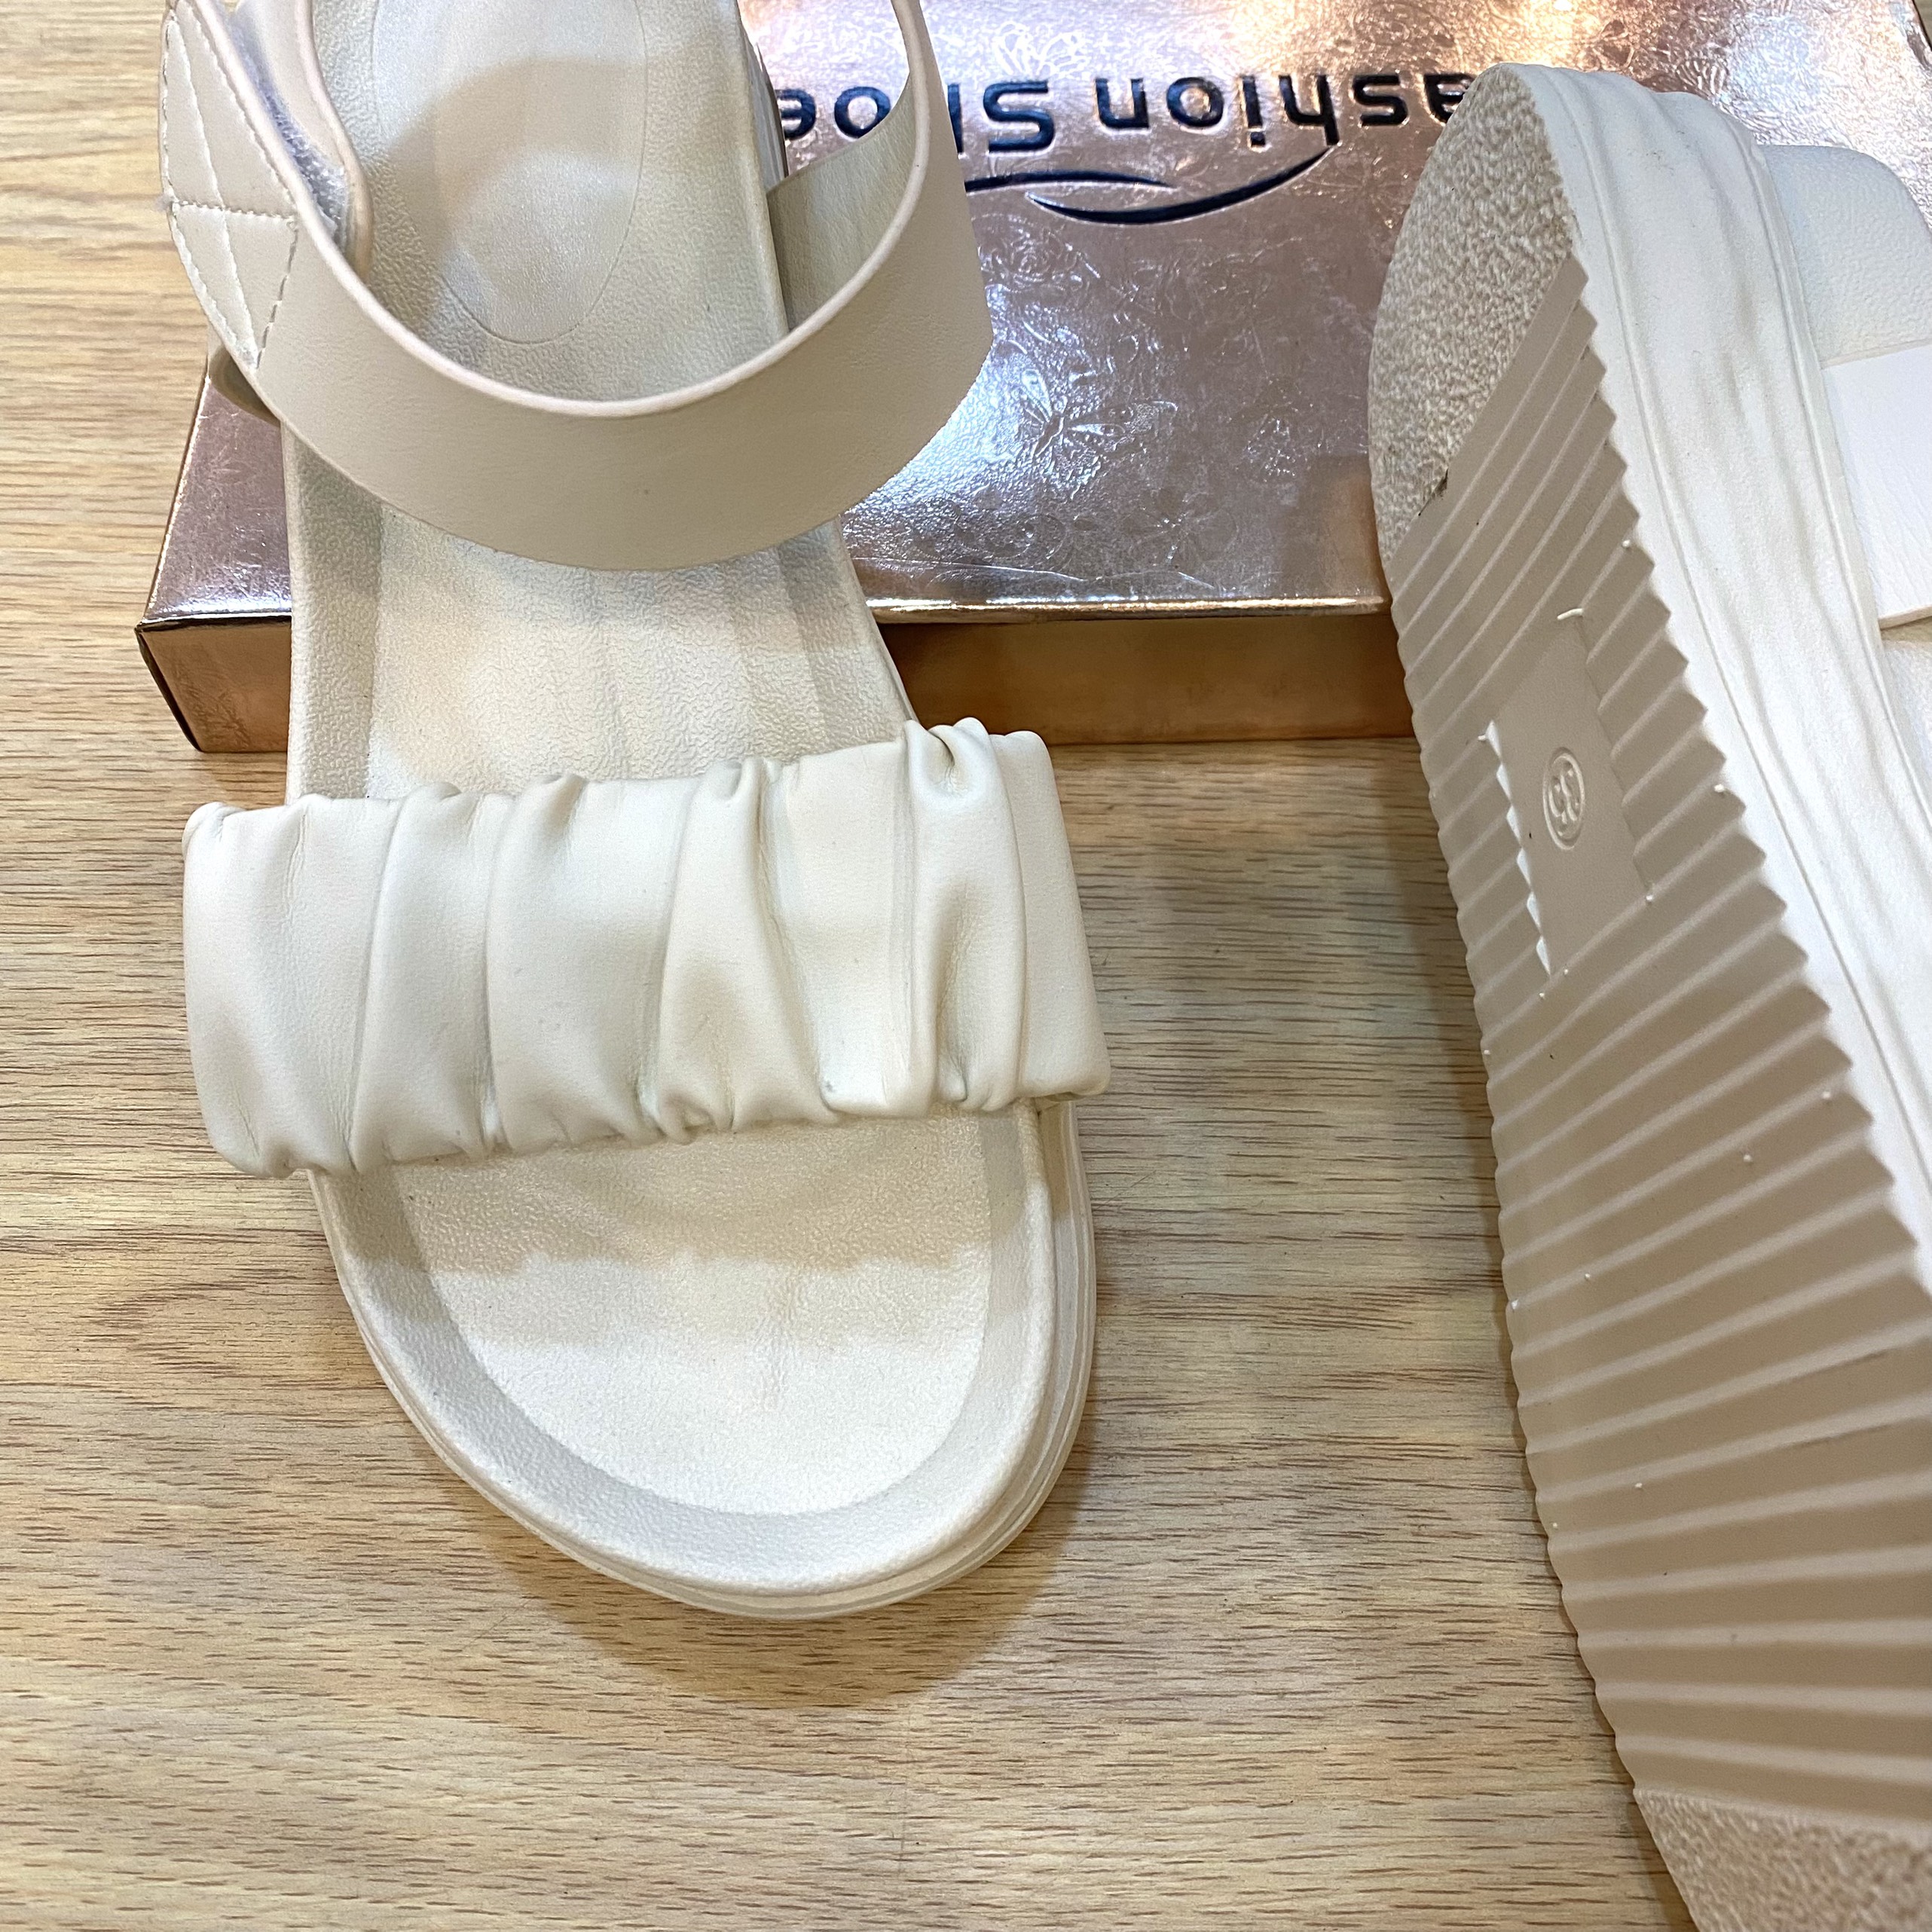 Giày Sandal Nữ Đế Xuồng HUA Quai Ngang màu kem dễ phối đồ cao 4cm 029086 (Hình chụp thật)